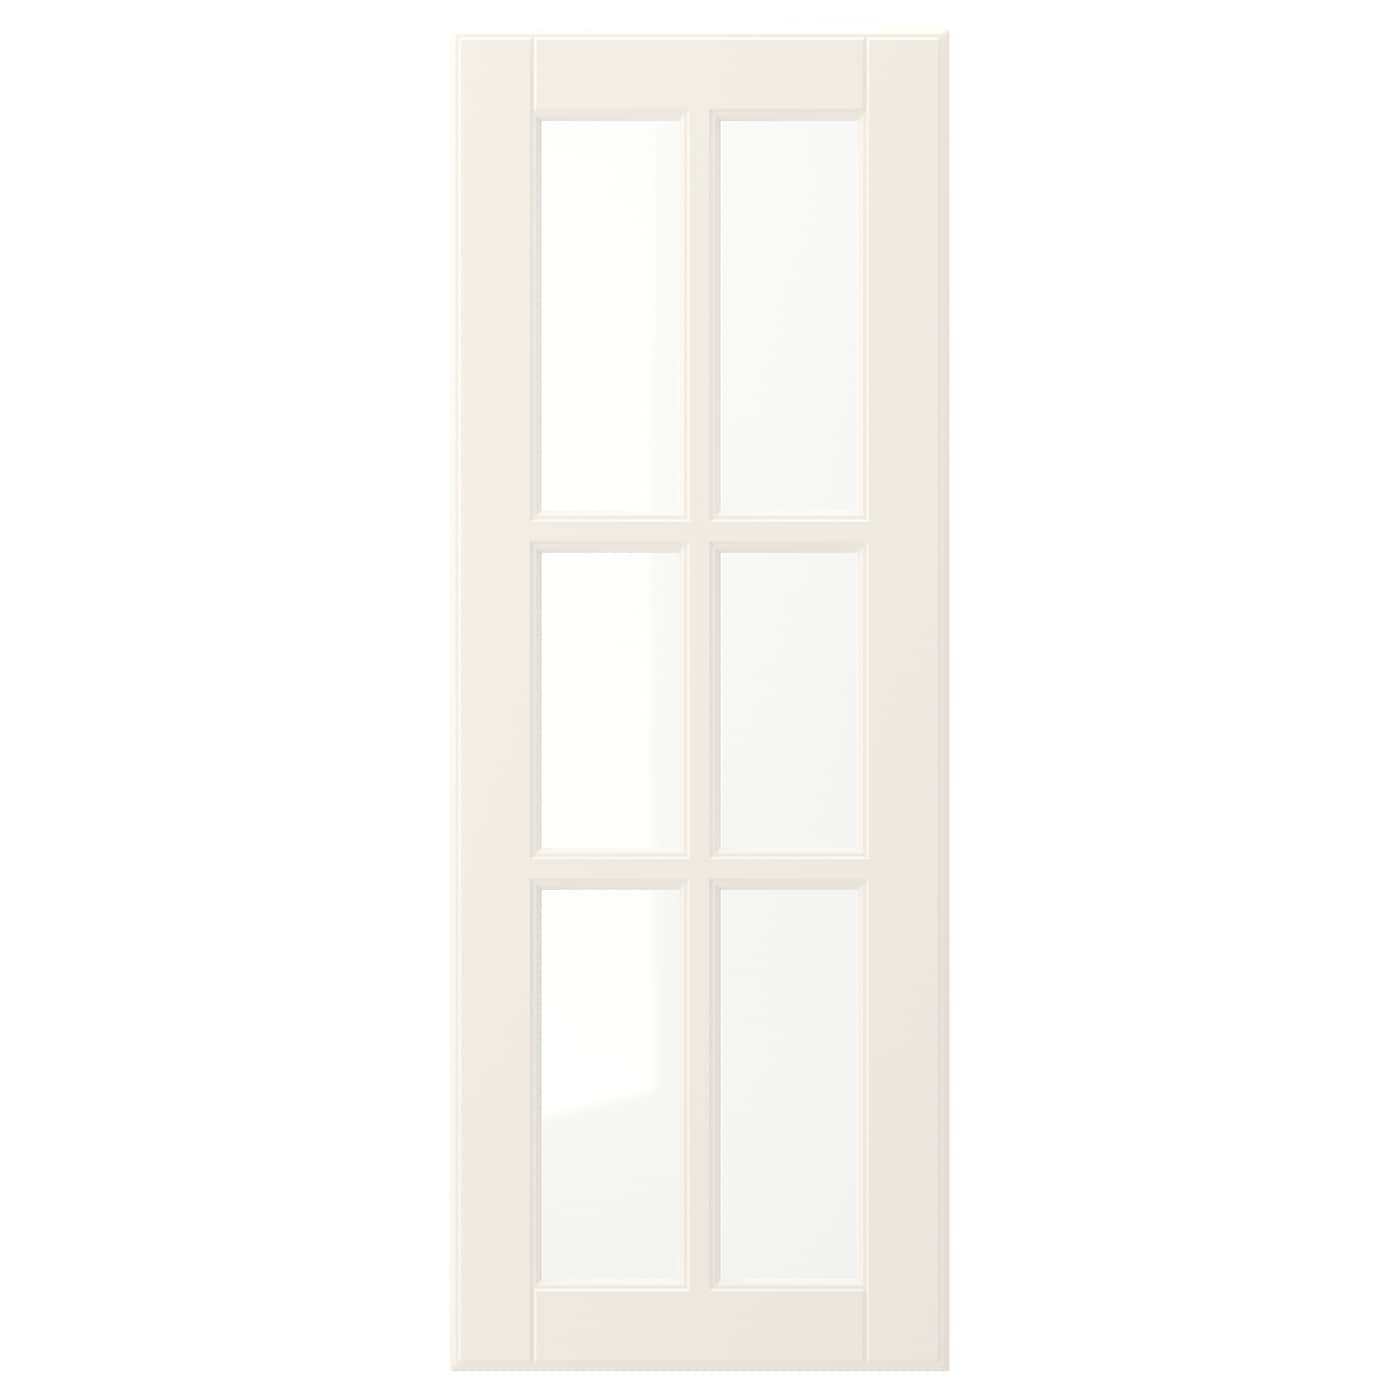 Дверца со стеклом - IKEA BODBYN, 80х30 см, кремовый, БУДБИН ИКЕА